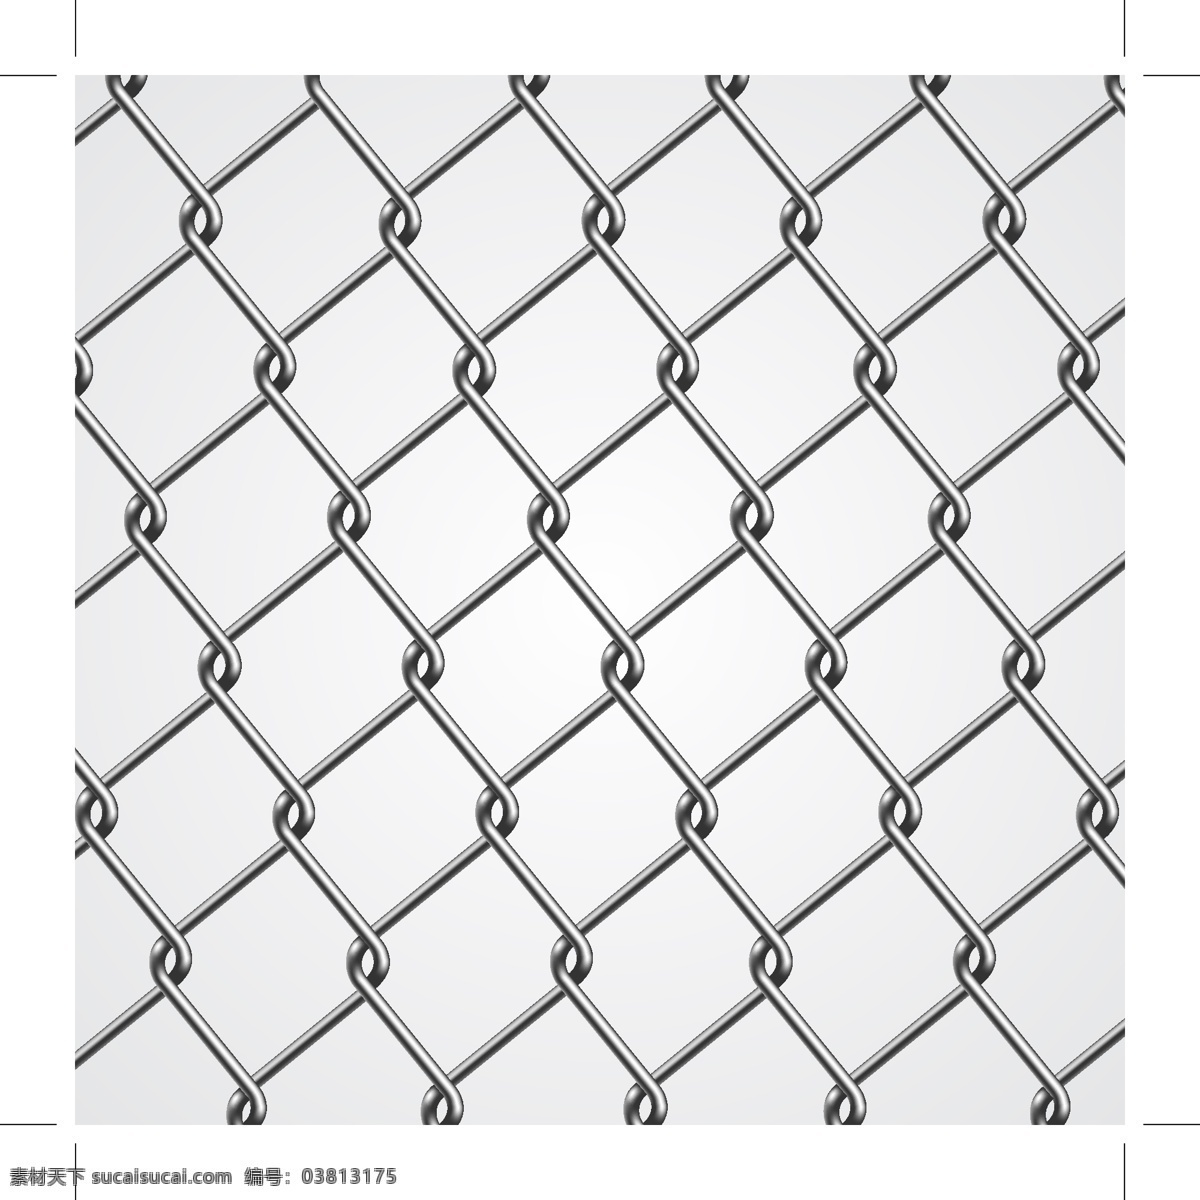 银色 铁丝网 背景 金属 栅栏 矢量图 eps格式 白色